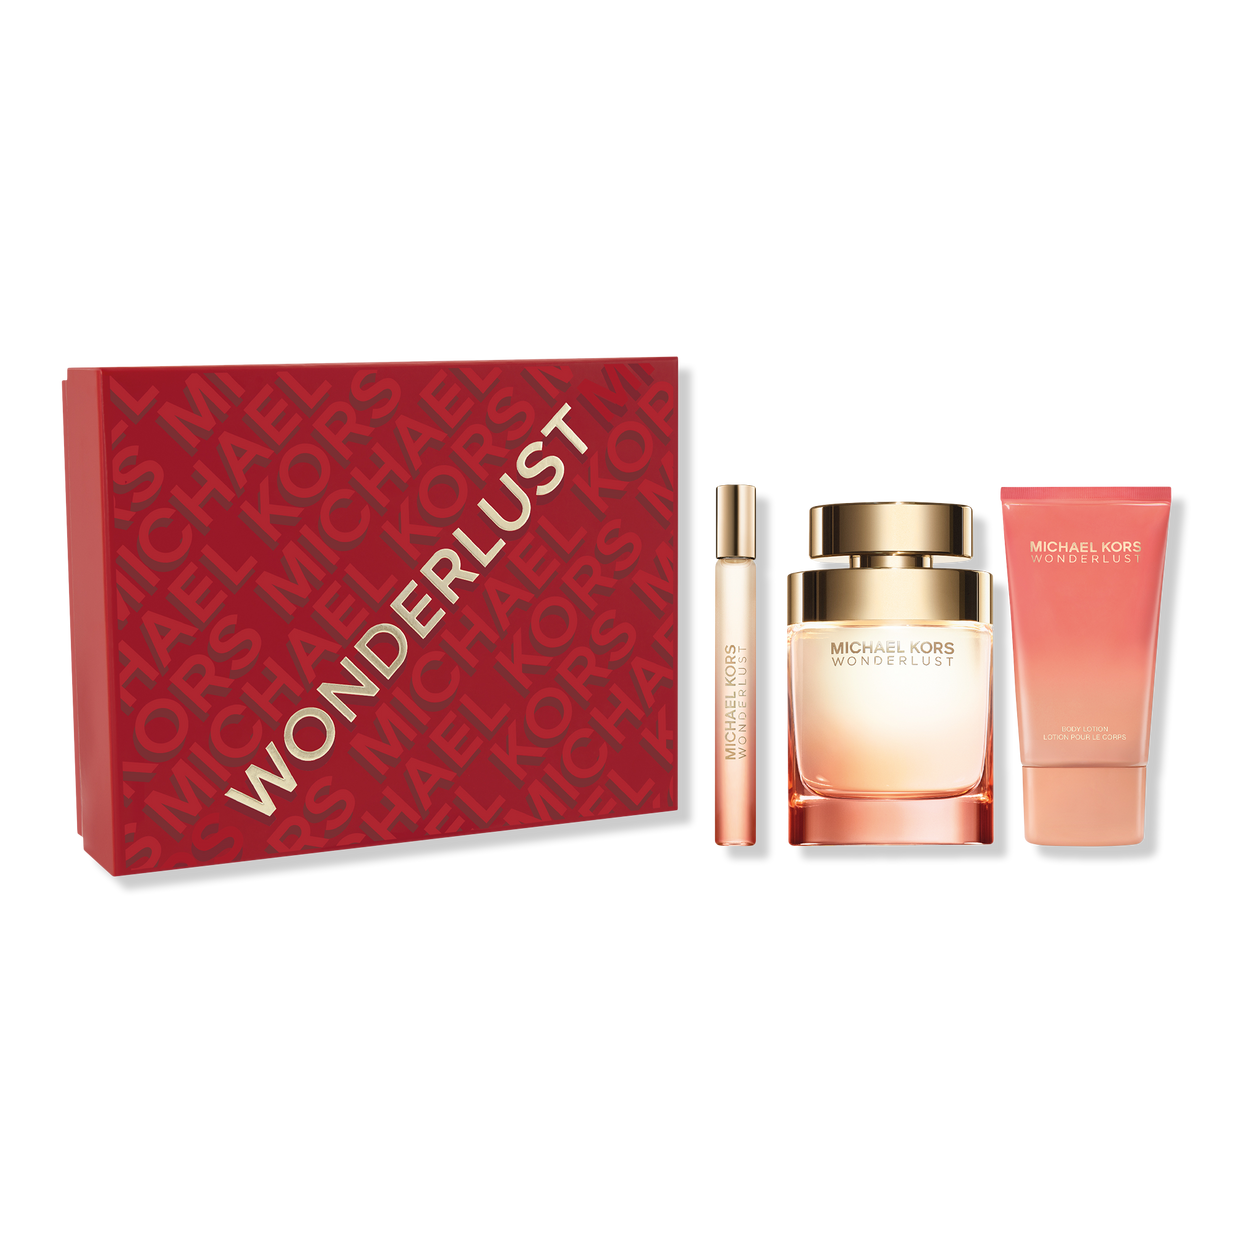 Wonderlust Eau de Parfum Gift Set - Michael Kors | Ulta Beauty